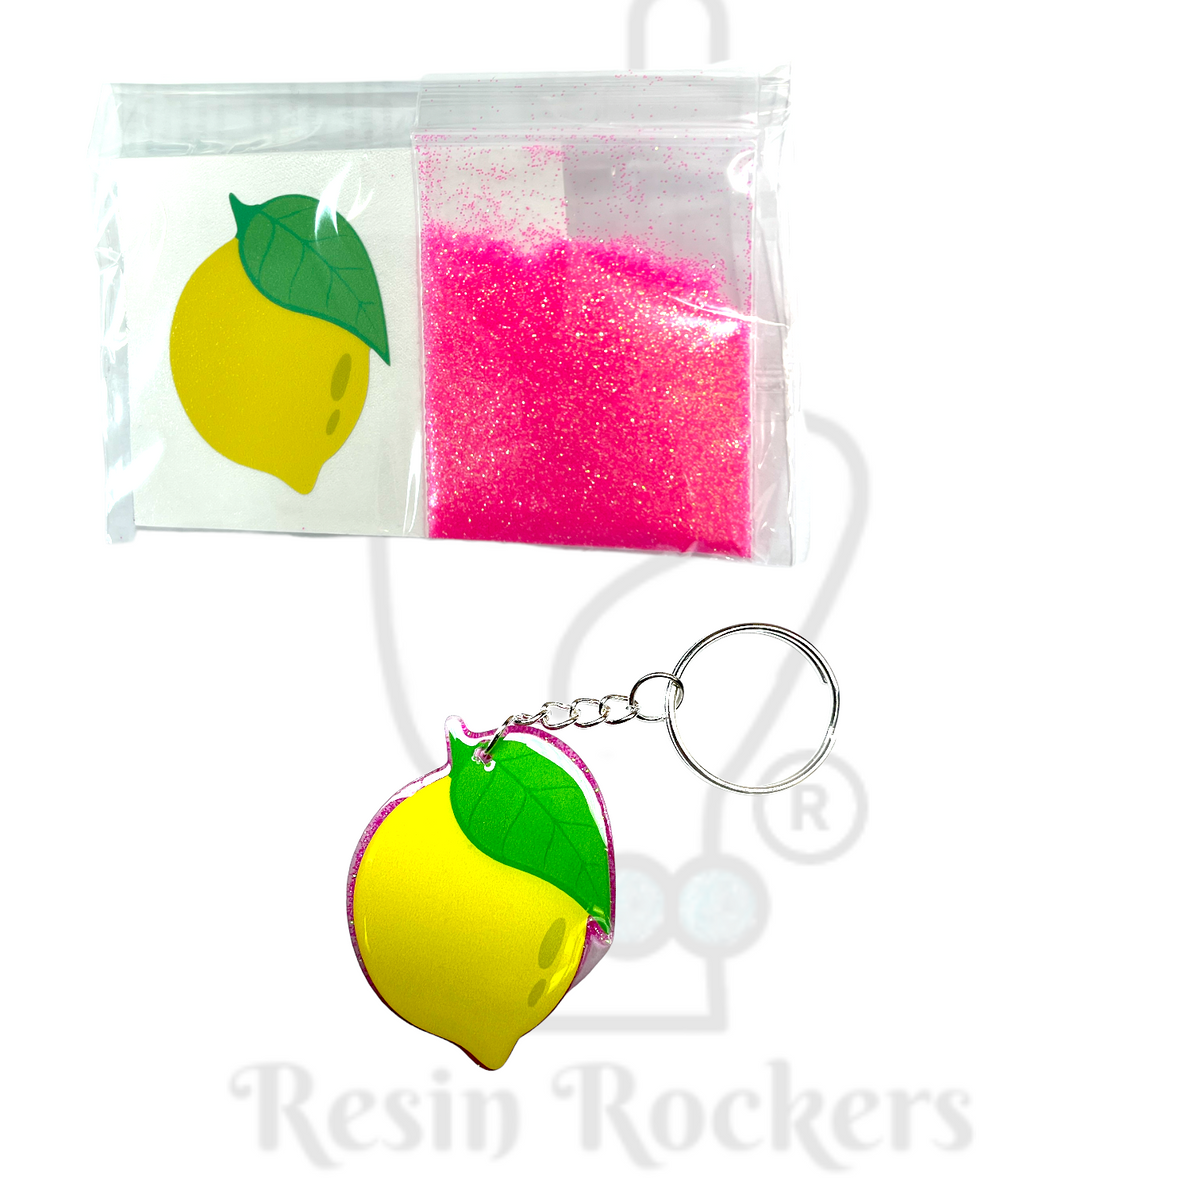 Lemon Acrylic Blank With Decal Keychain Kit